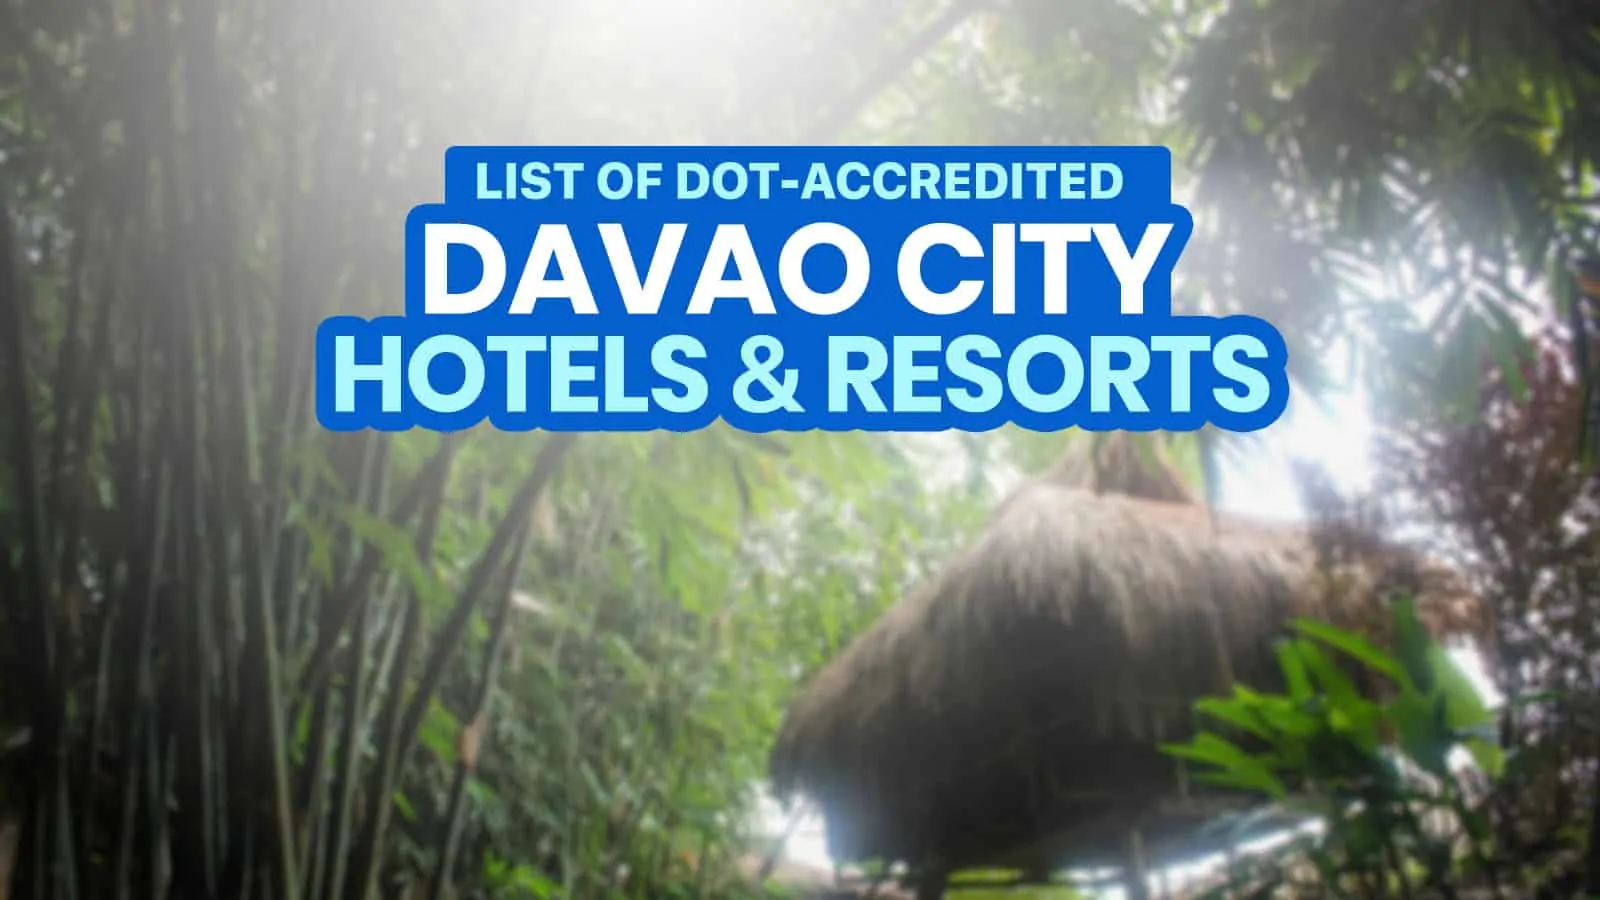 达沃市的dot认证酒店和度假村名单